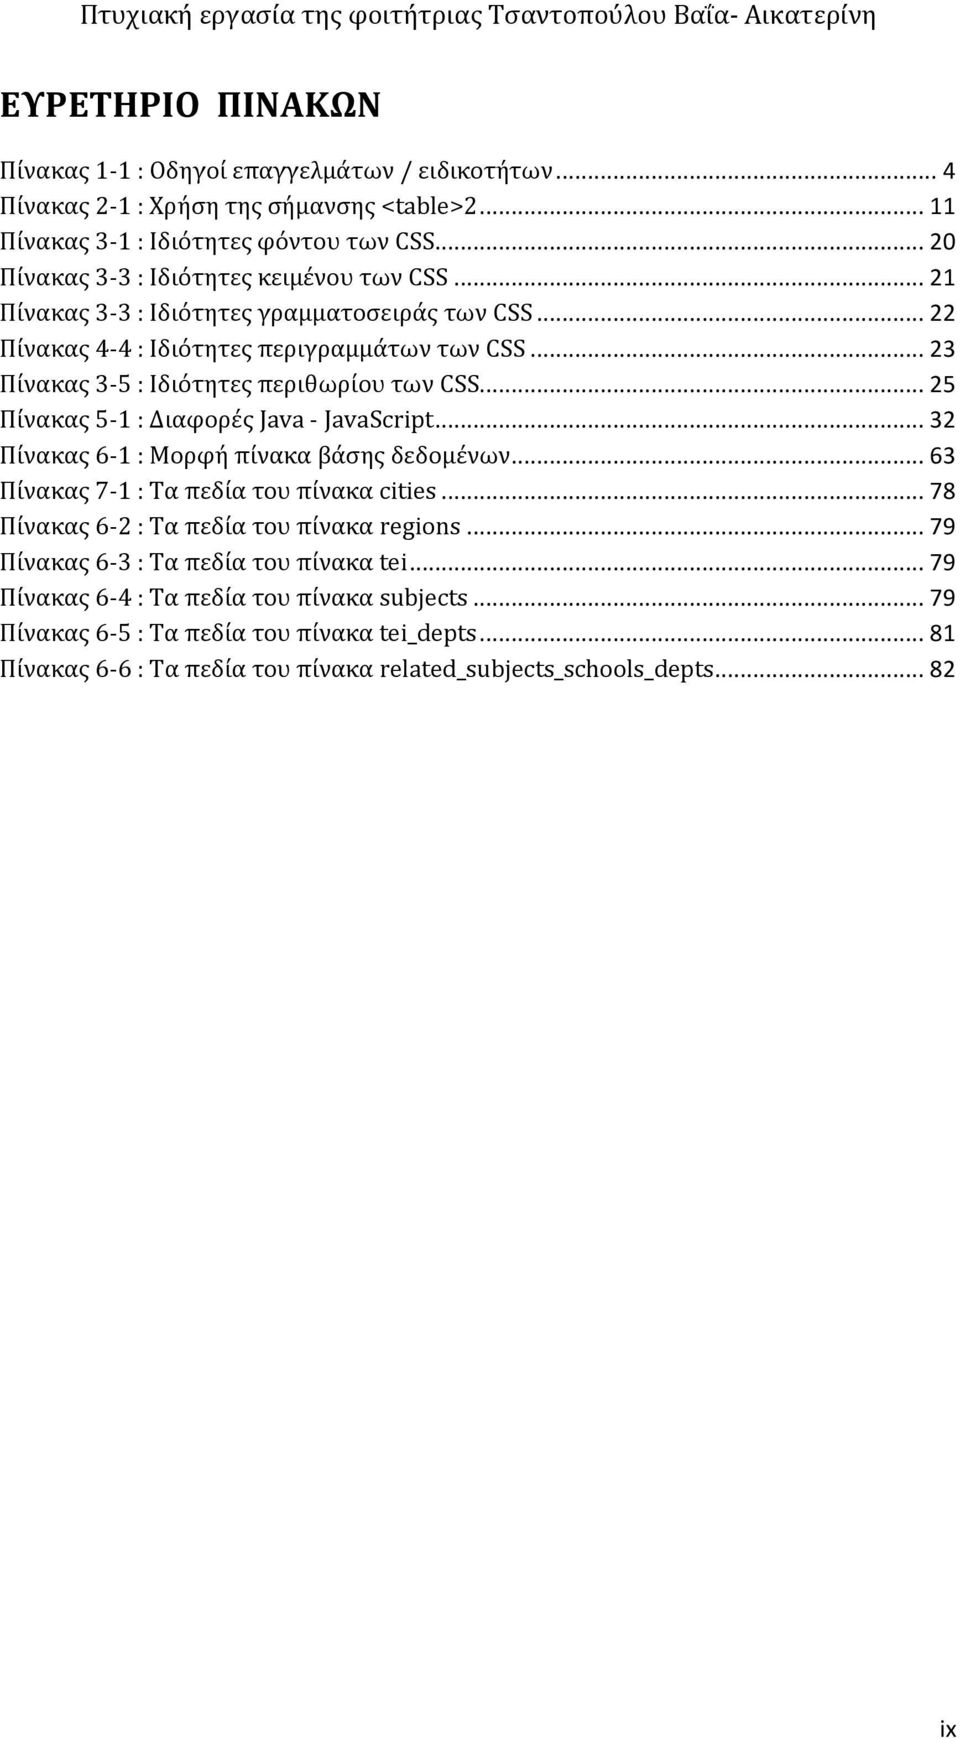 .. 23 Πίνακας 3-5 : Ιδιότητες περιθωρίου των CSS... 25 Πίνακας 5-1 : Διαφορές Java - JavaScript... 32 Πίνακας 6-1 : Μορφή πίνακα βάσης δεδομένων... 63 Πίνακας 7-1 : Τα πεδία του πίνακα cities.